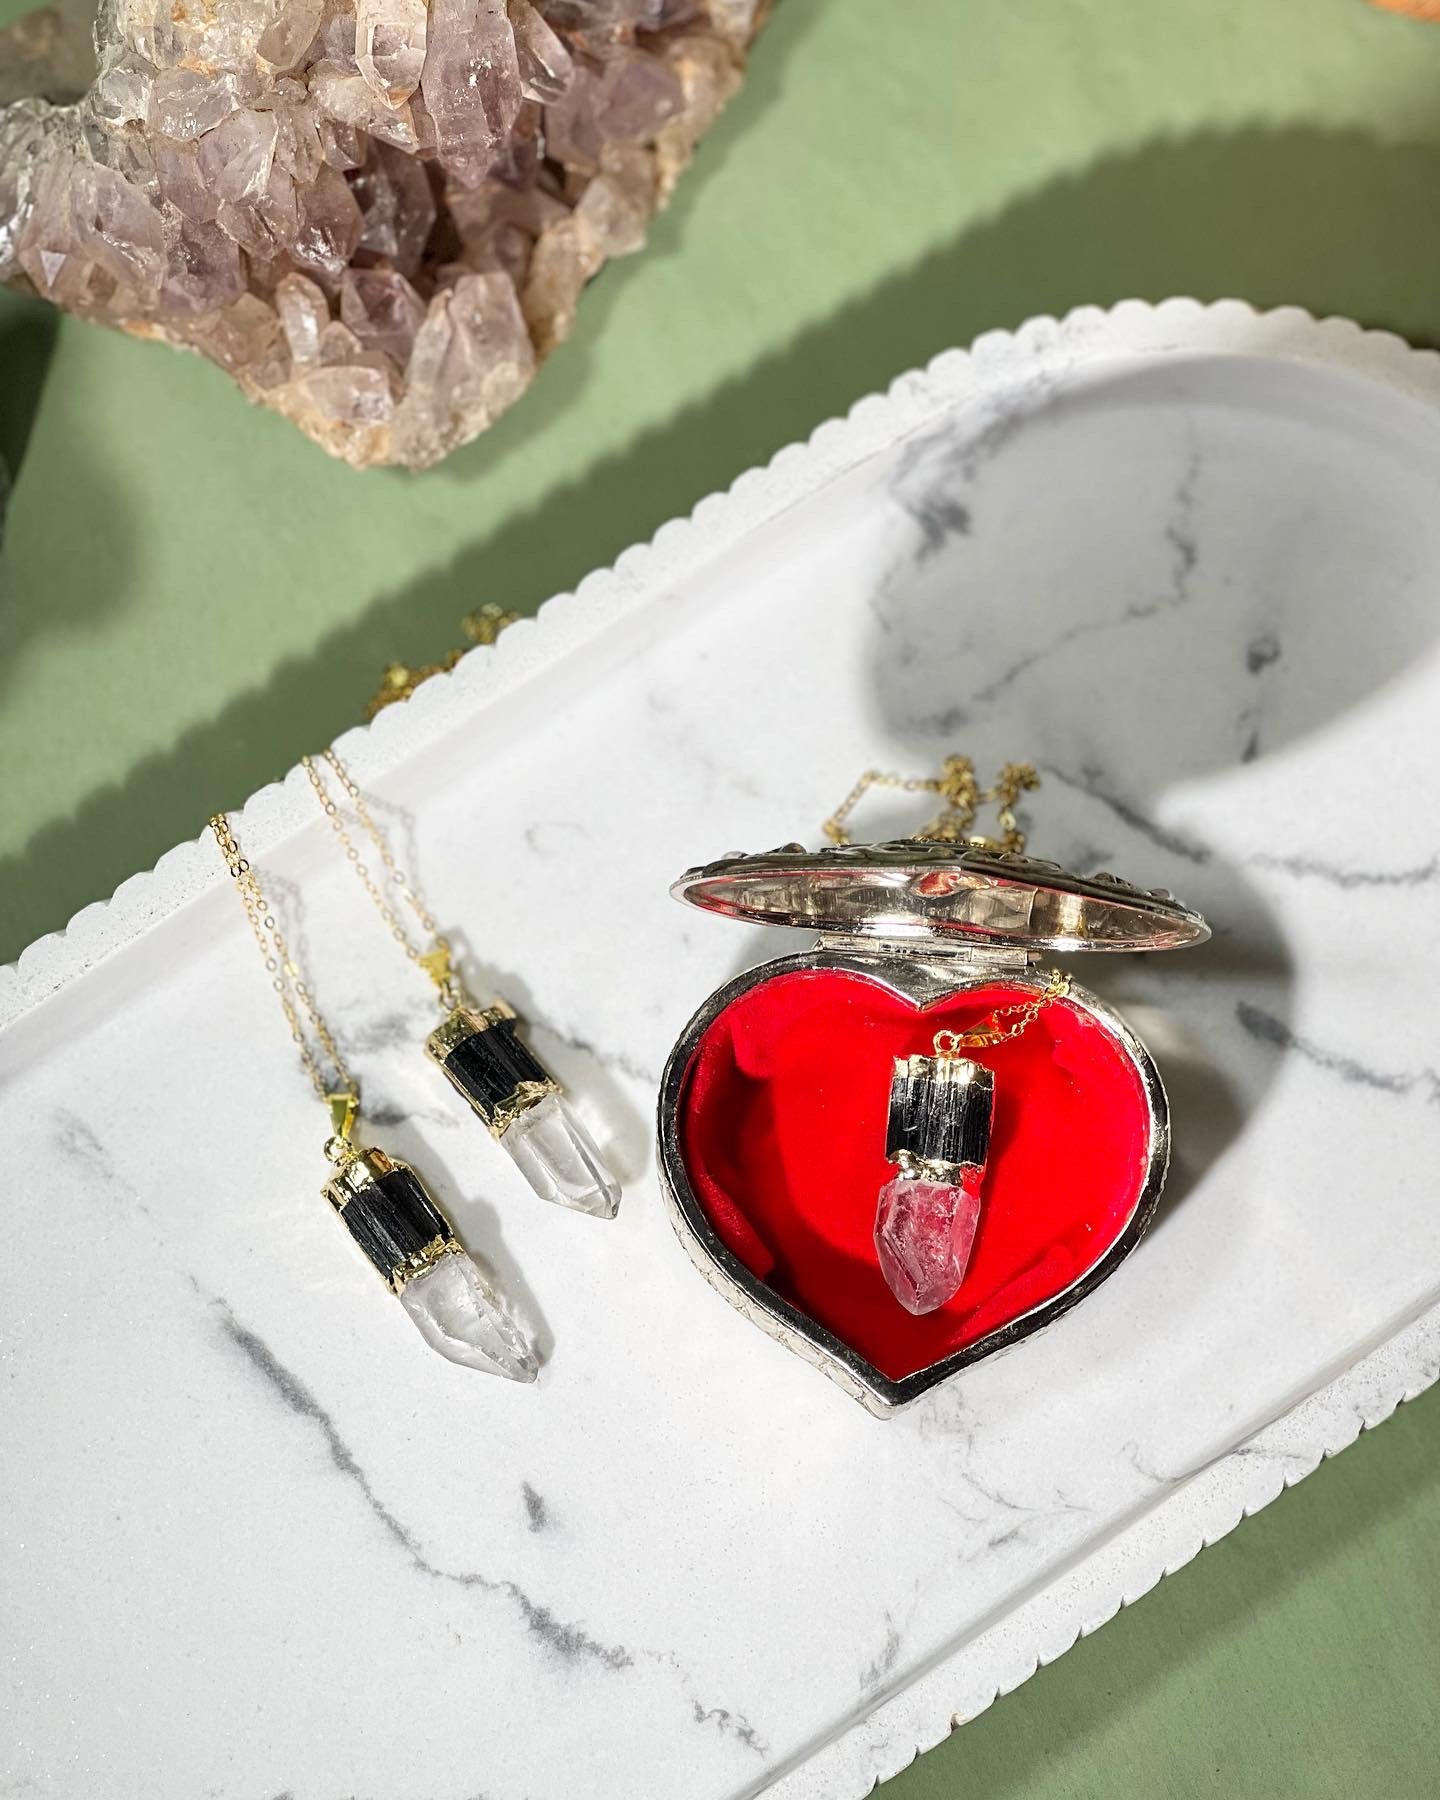 Tourmaline and clear quartz necklaces